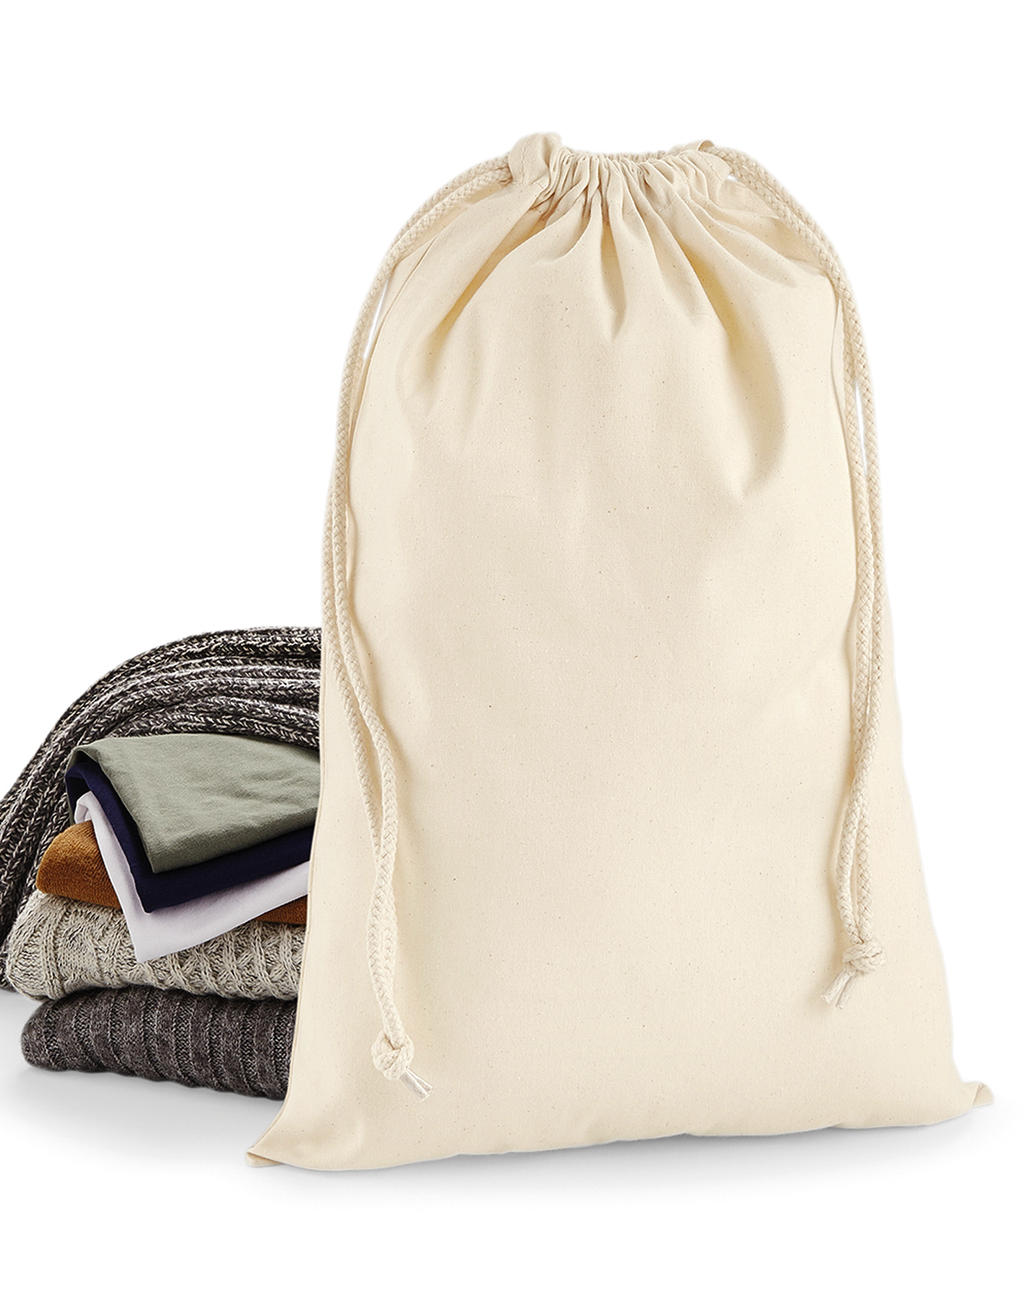  Premium Cotton Stuff Bag in Farbe Natural